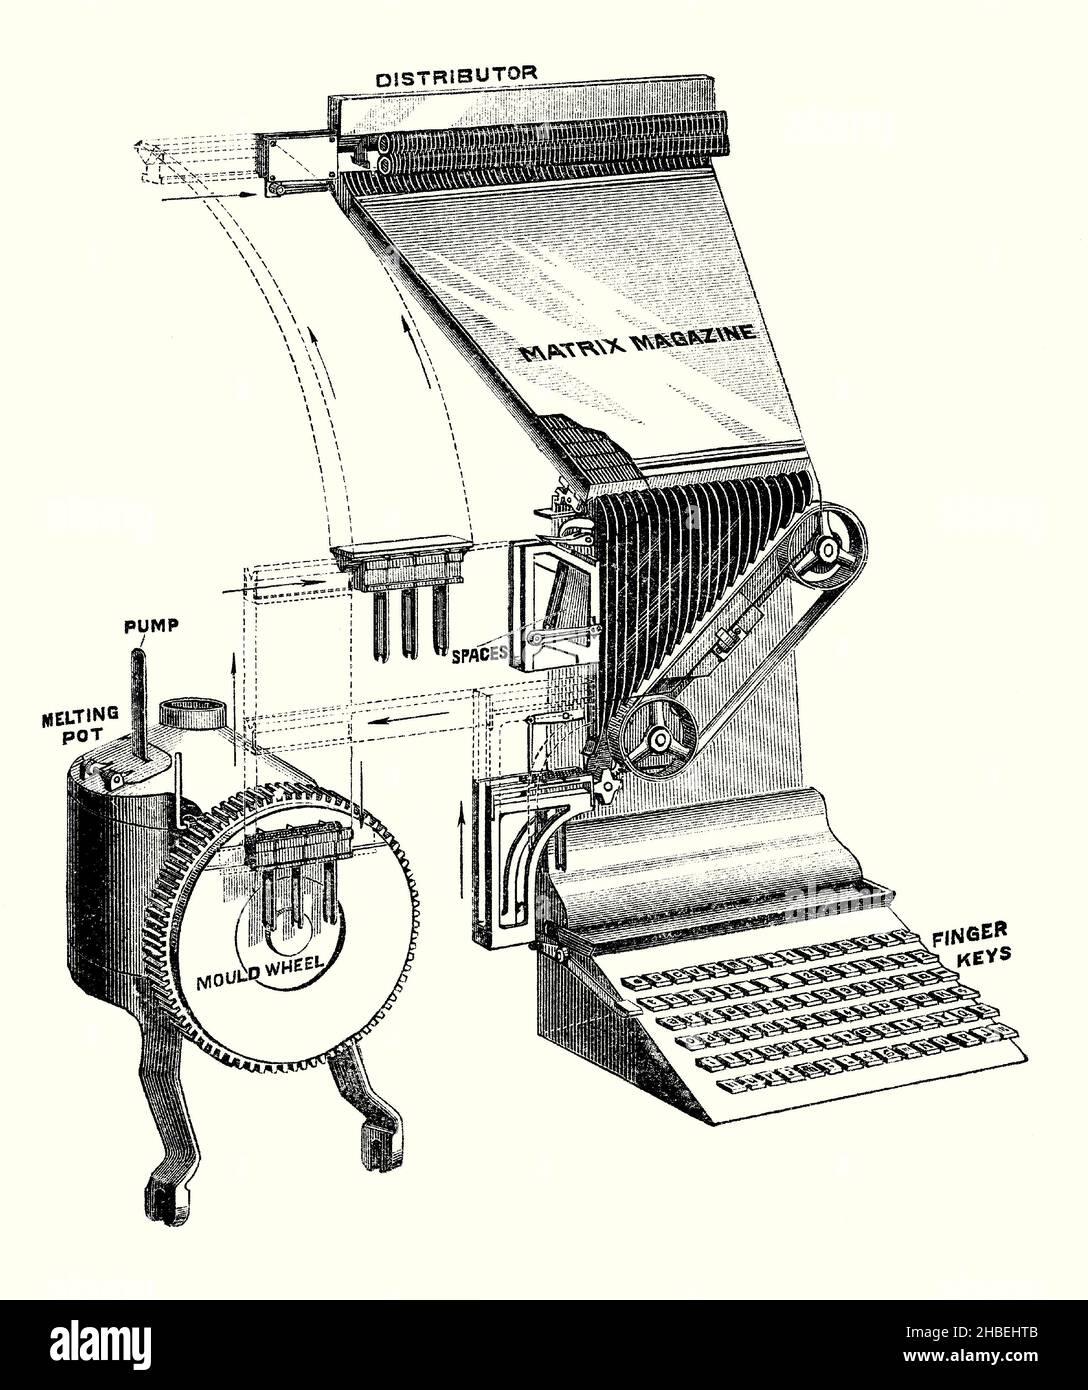 Eine alte Gravur, die die wichtigsten beweglichen Teile einer Linotype-Maschine aus dem späten 1800s zeigt. Es stammt aus einem viktorianischen Buch der 1890s über Entdeckungen und Erfindungen während des 1800s. Die Linotype-Maschine ist eine ‘Liniengießmaschine’, die zum Drucken von Text verwendet wird. Es war ein Heißmetall-Schriftsetzsystem, das Metallblöcke für individuelle Anwendungen goss. Ottmar Mergenthaler erfand sie 1884. Linotype wurde die wichtigste Methode, um den Text, vor allem kleinformatigem Text, für Zeitungen, Zeitschriften und Bücher vom späten 19th. Jahrhundert bis in die 1970s und 1980s festzulegen. Stockfoto